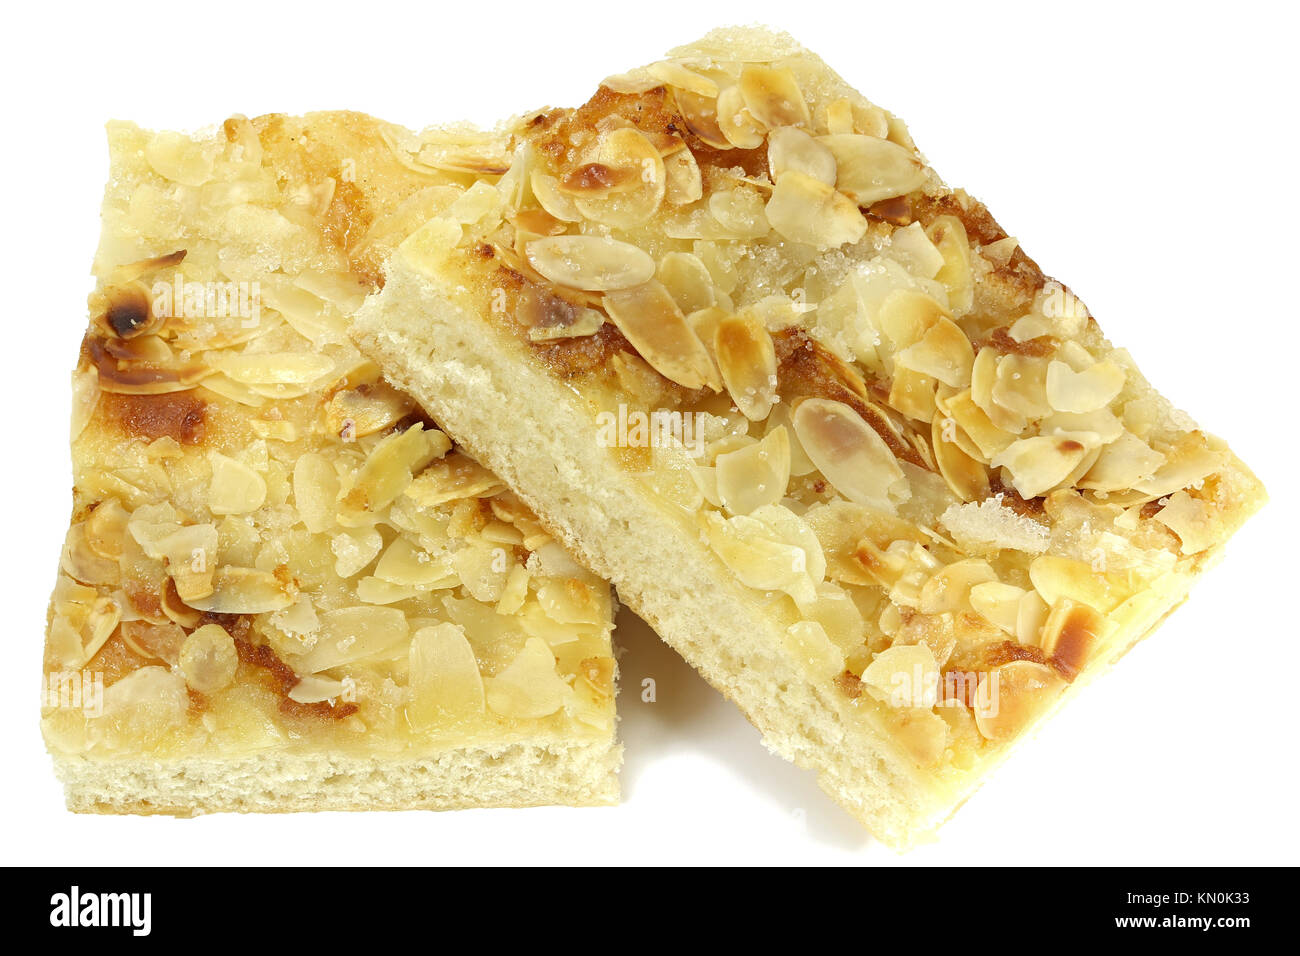 Butterkuchen tradicionales del norte de Alemania (mantequilla pastel) aislado sobre fondo blanco. Foto de stock